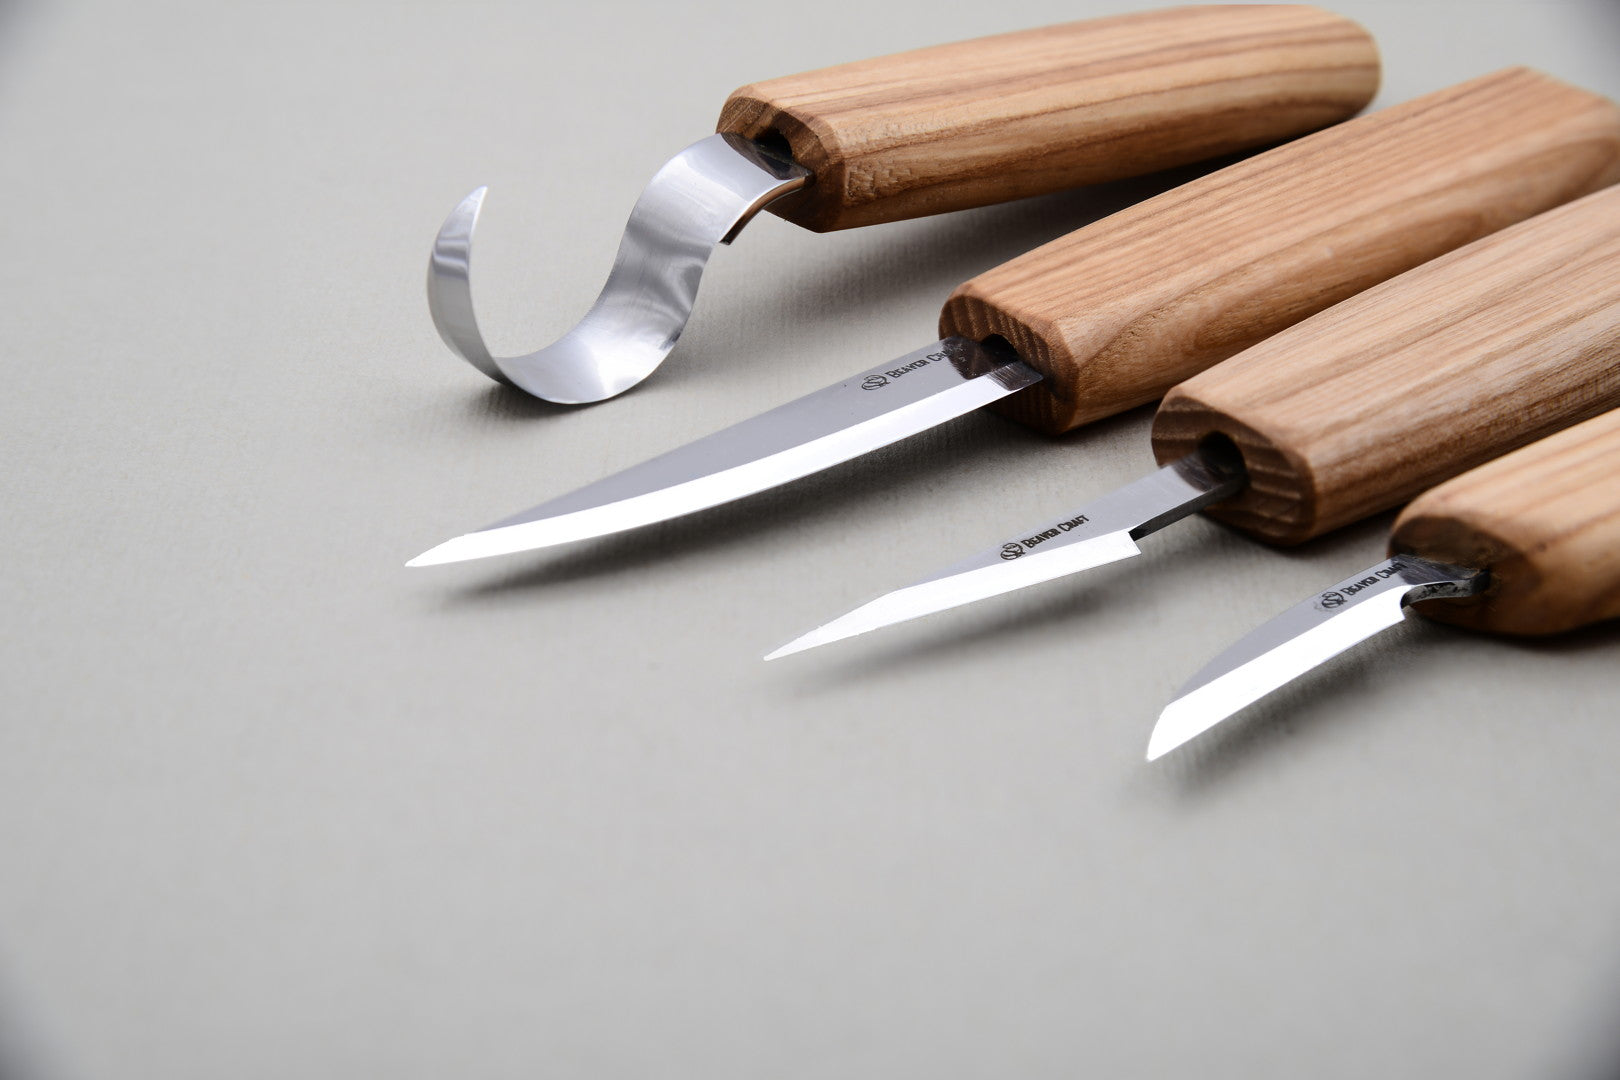 S09L – Set mit 4 Messern in Werkzeugrolle (Linkshänder)